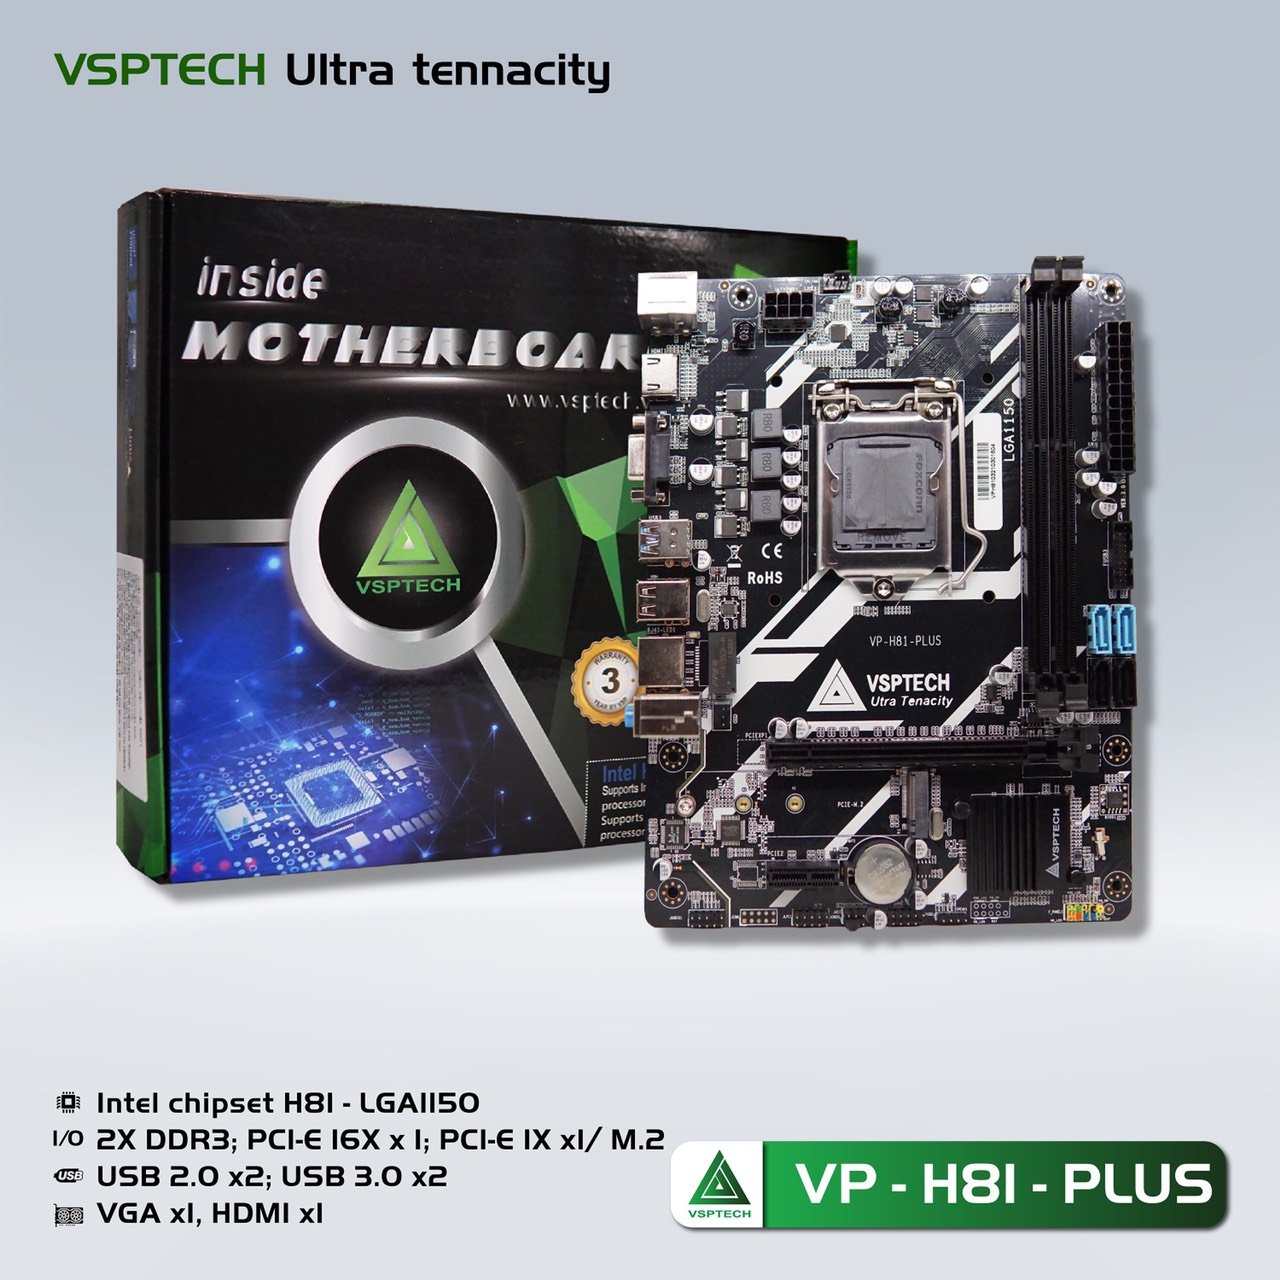 Mainboard SK 1150 VSPTECH VP-H81-PLUS Chính hãng (VGA, HDMI, M.2 PCIe/NVMe, LAN 1000Mbps, 2 khe RAM DDR3, mATX)